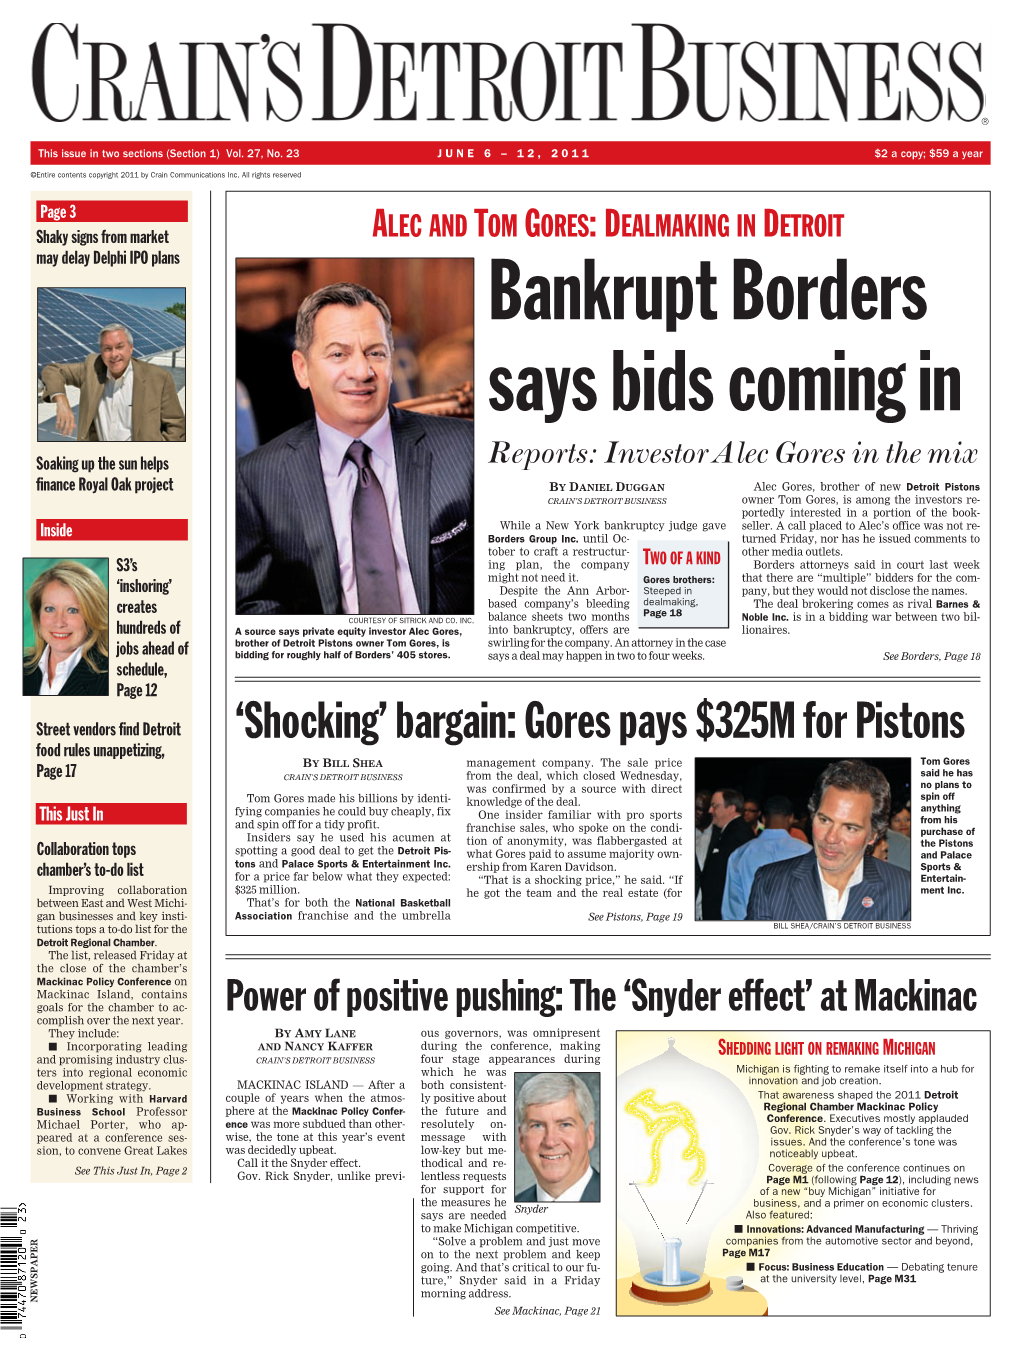 Bankrupt Borders Says Bids Coming In